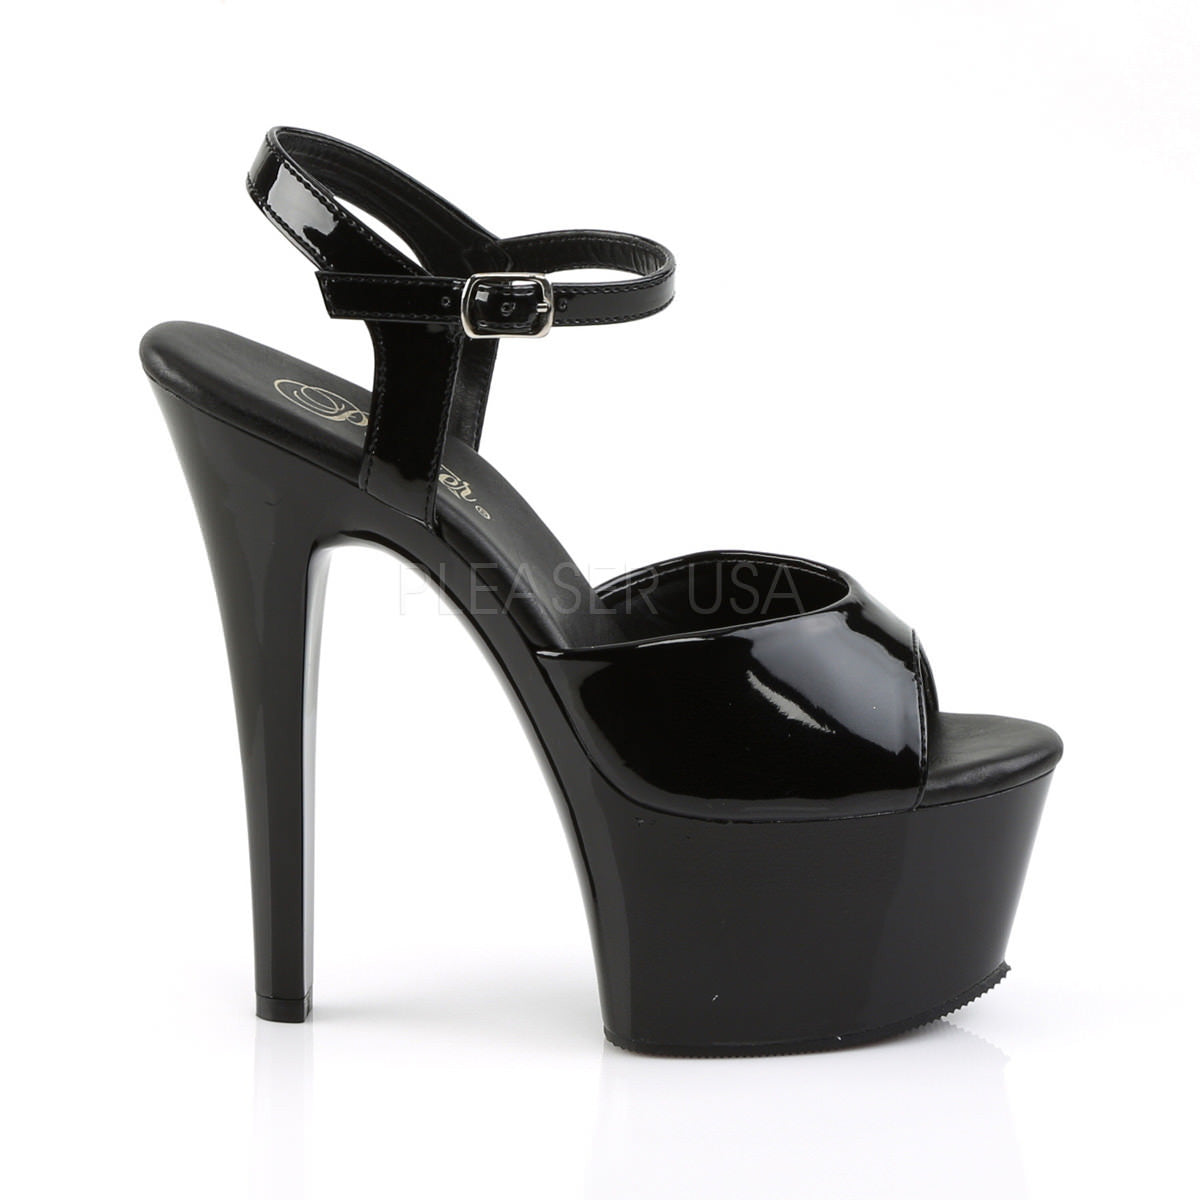 Pleaser ASPIRE-609 Black Ankle Strap Sandals With Black Platform - Shoecup.com - 8